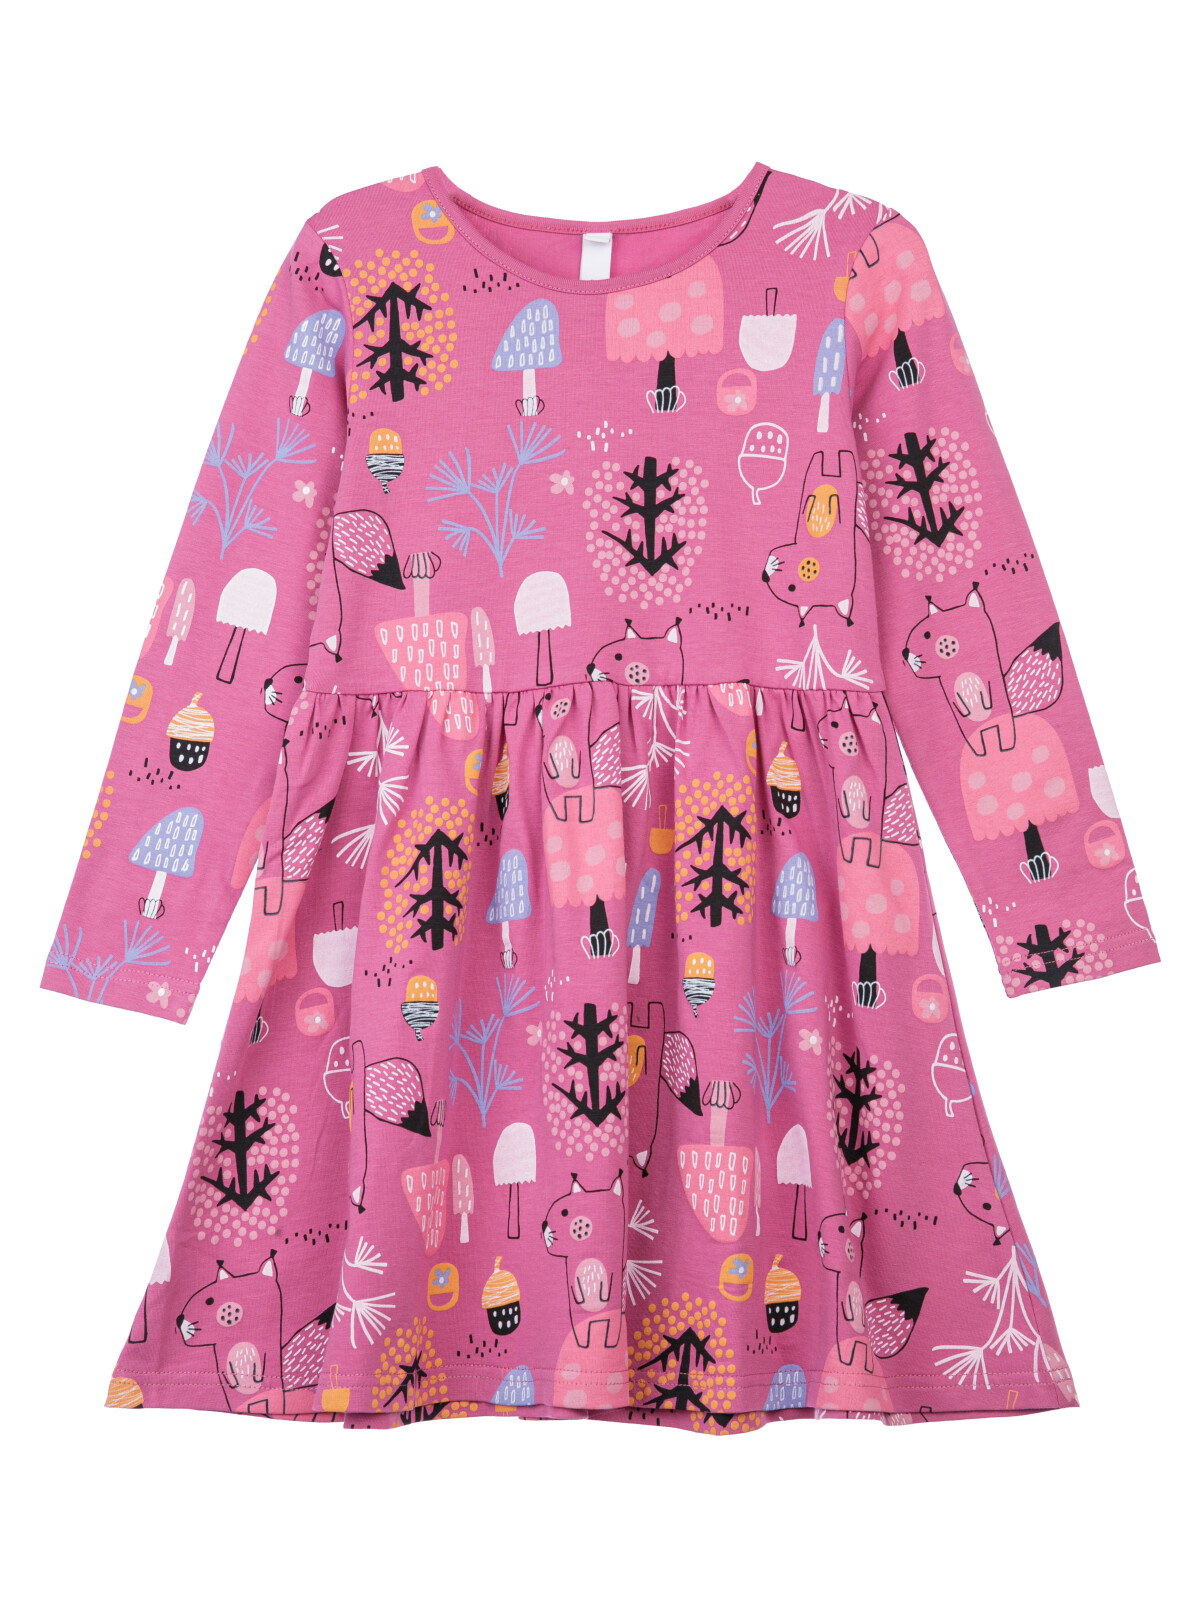 Платье трикотажное для девочек PlayToday, цветной, 98